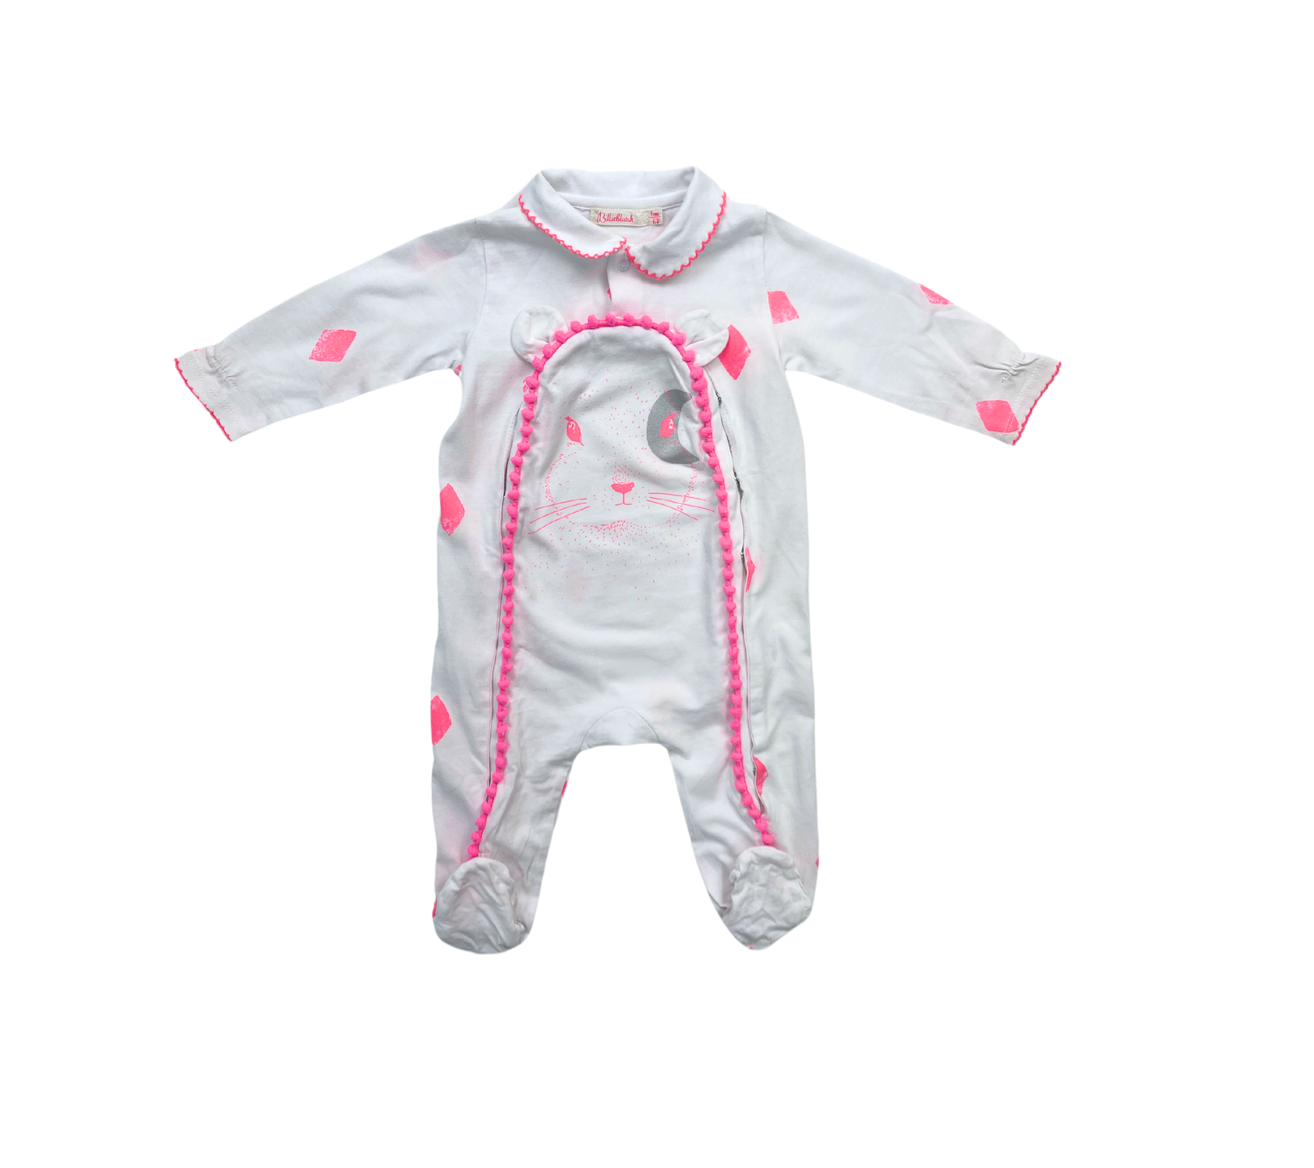 BILLIE BLUSH - Pyjama blanc détails roses - 6 mois